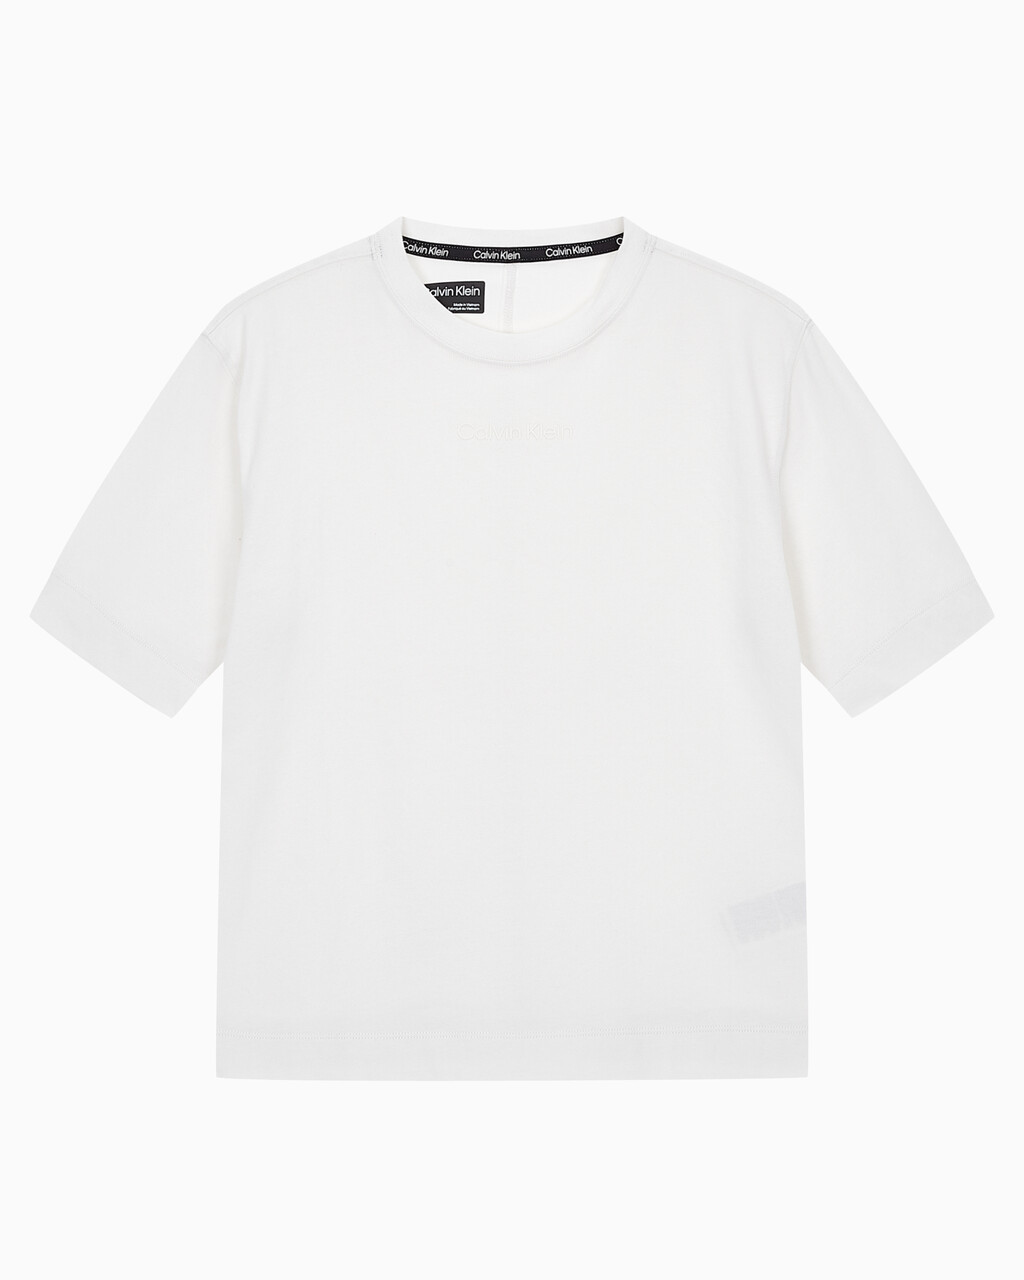 Buy 여성 릴렉스 핏 에센셜 반팔 티셔츠 in color WHITE